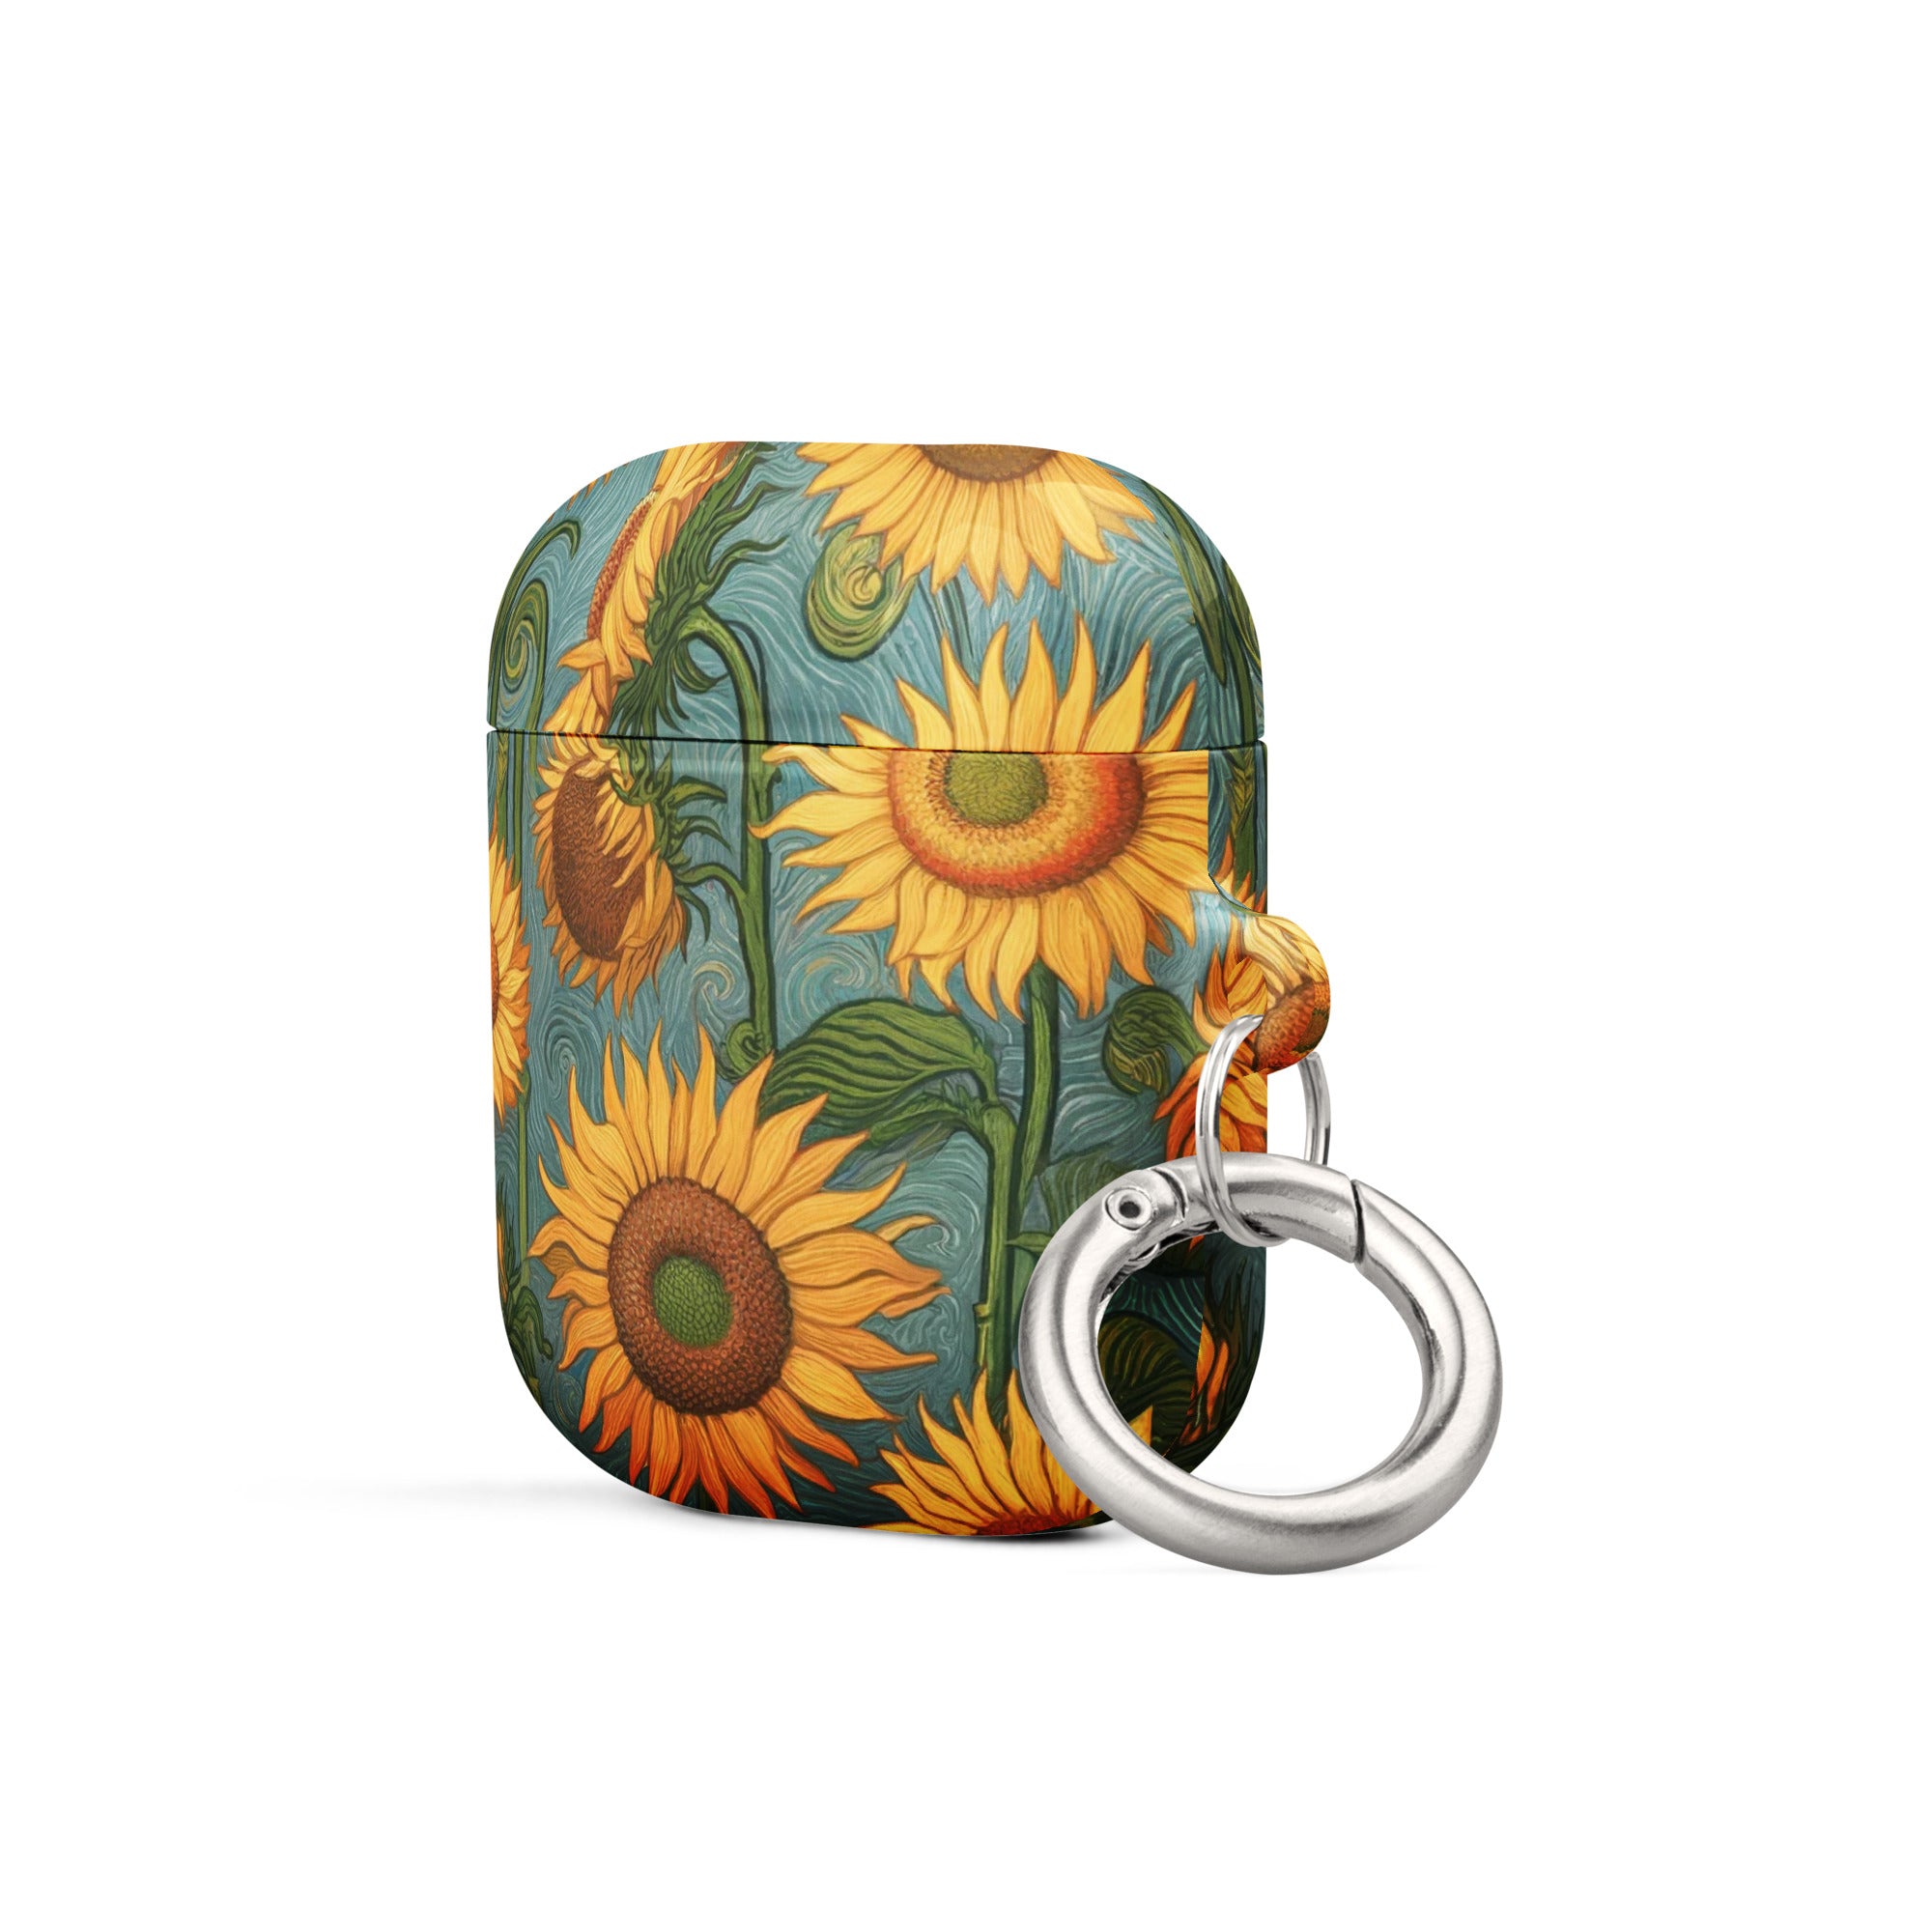 Vincent van Gogh „Sonnenblumen“, berühmtes Gemälde, AirPods®-Hülle | Premium-Kunsthülle für AirPods®